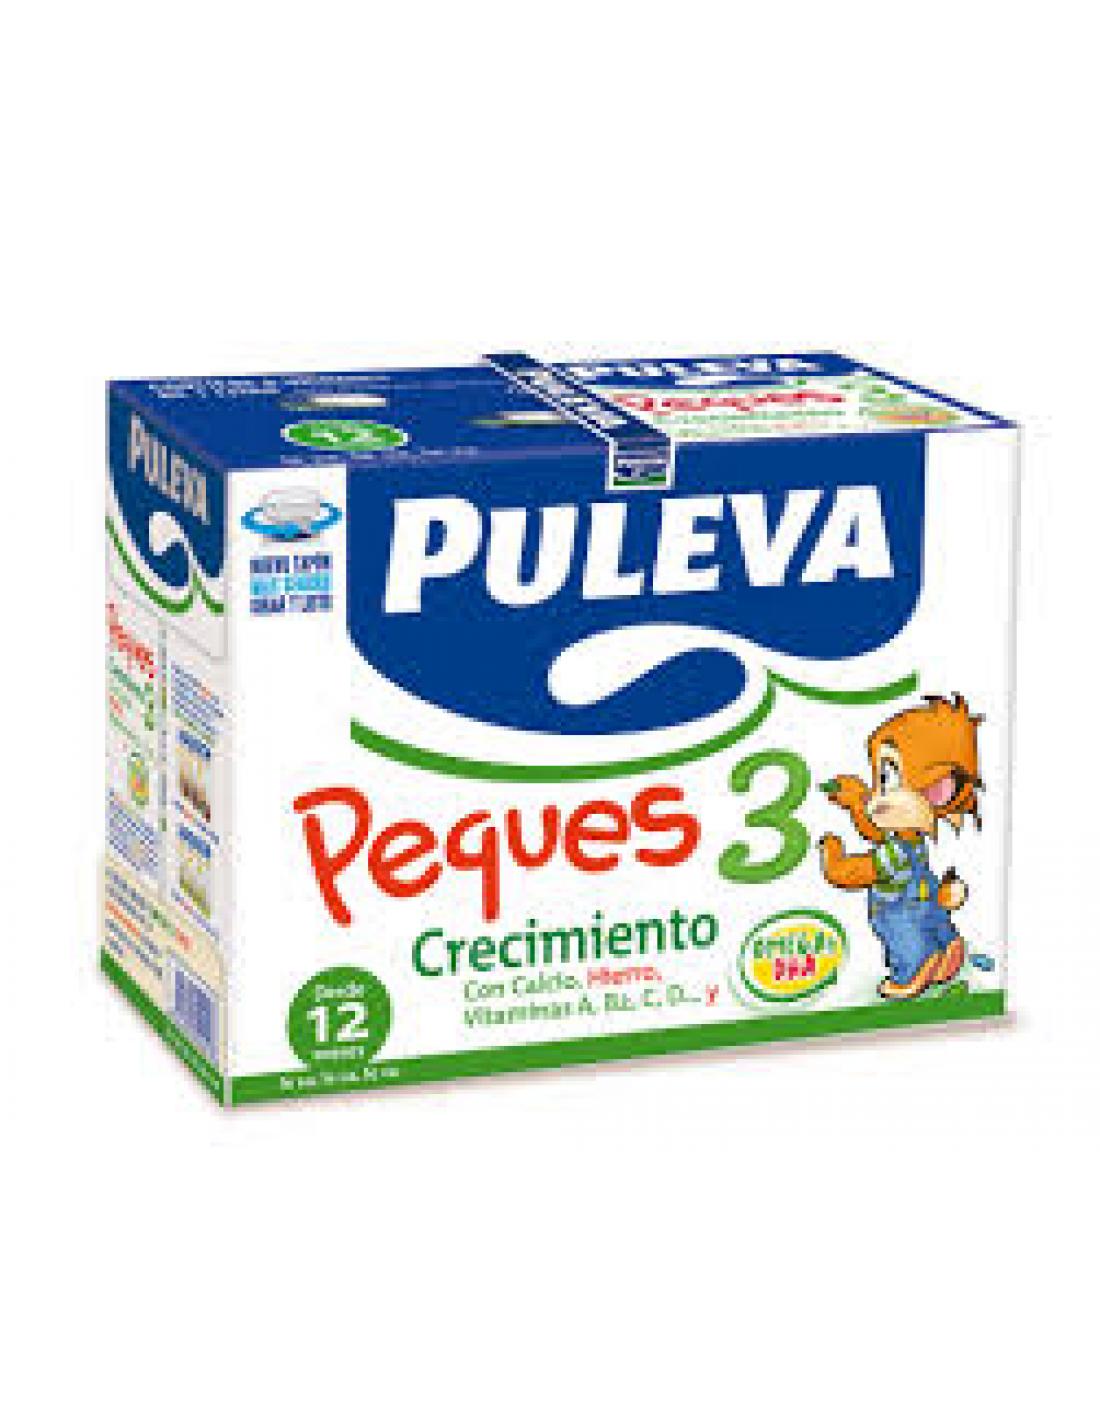 sinazucar.org - Un brik de Puleva Peques (200ml) contiene 13,6g de  azúcares, equivalente a 3,4 terrones. Con el sello de la Asociación  Española de Pediatría